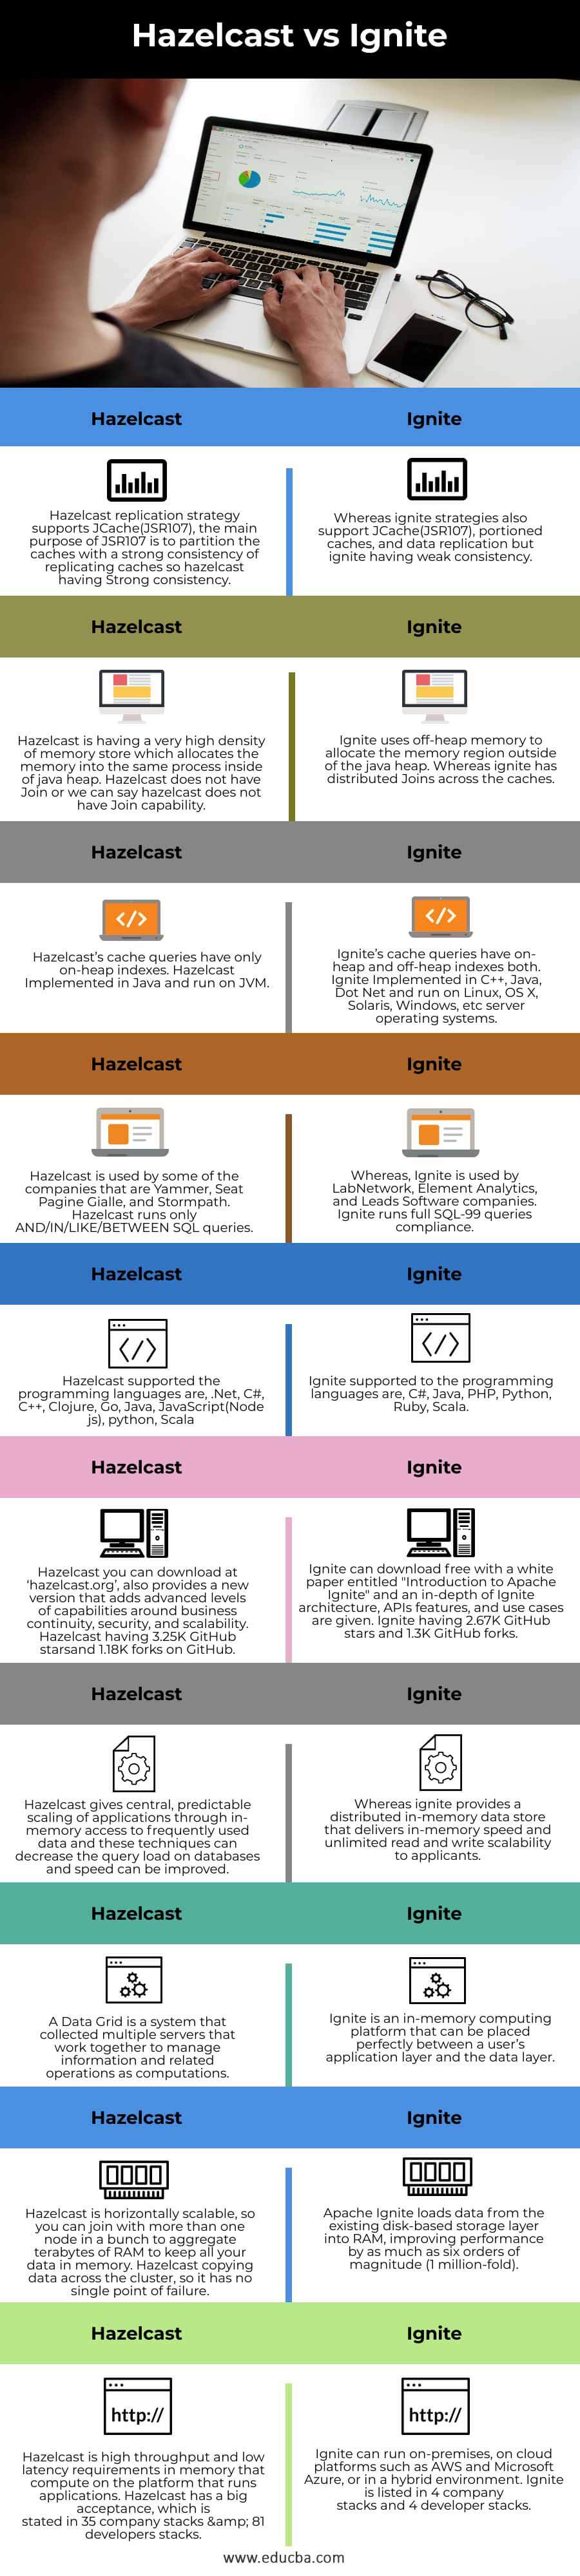 Hazelcast-vs-Ignite-info